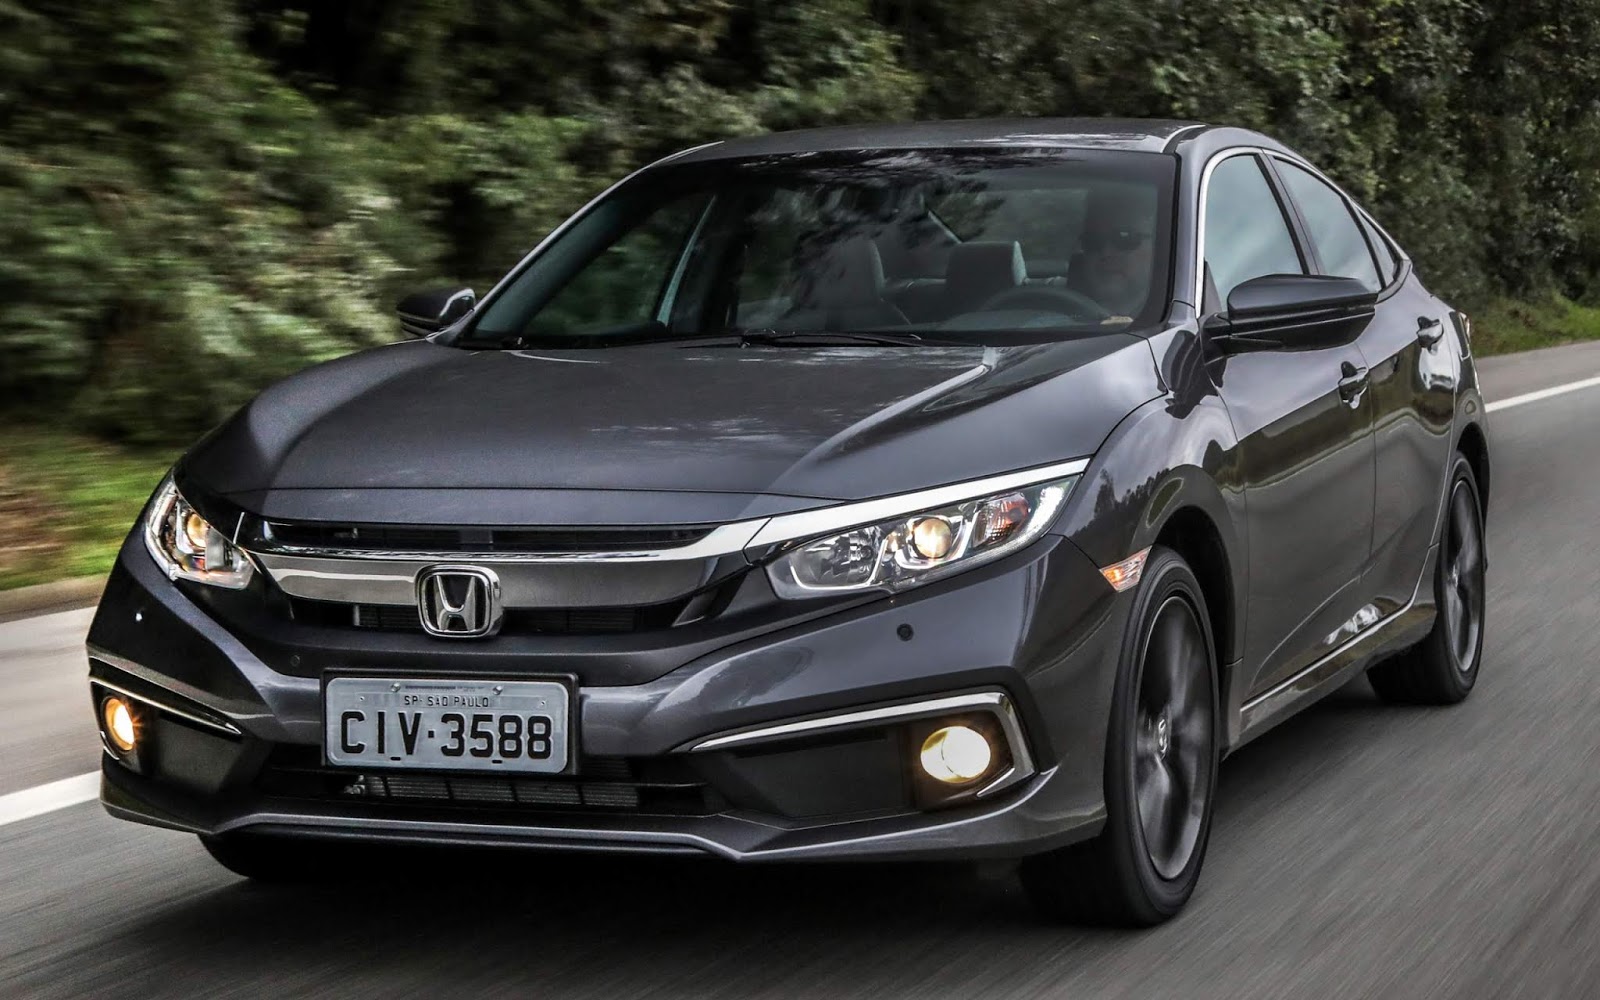 Novo Honda Civic 2020 ganha versão LX: fotos e preços